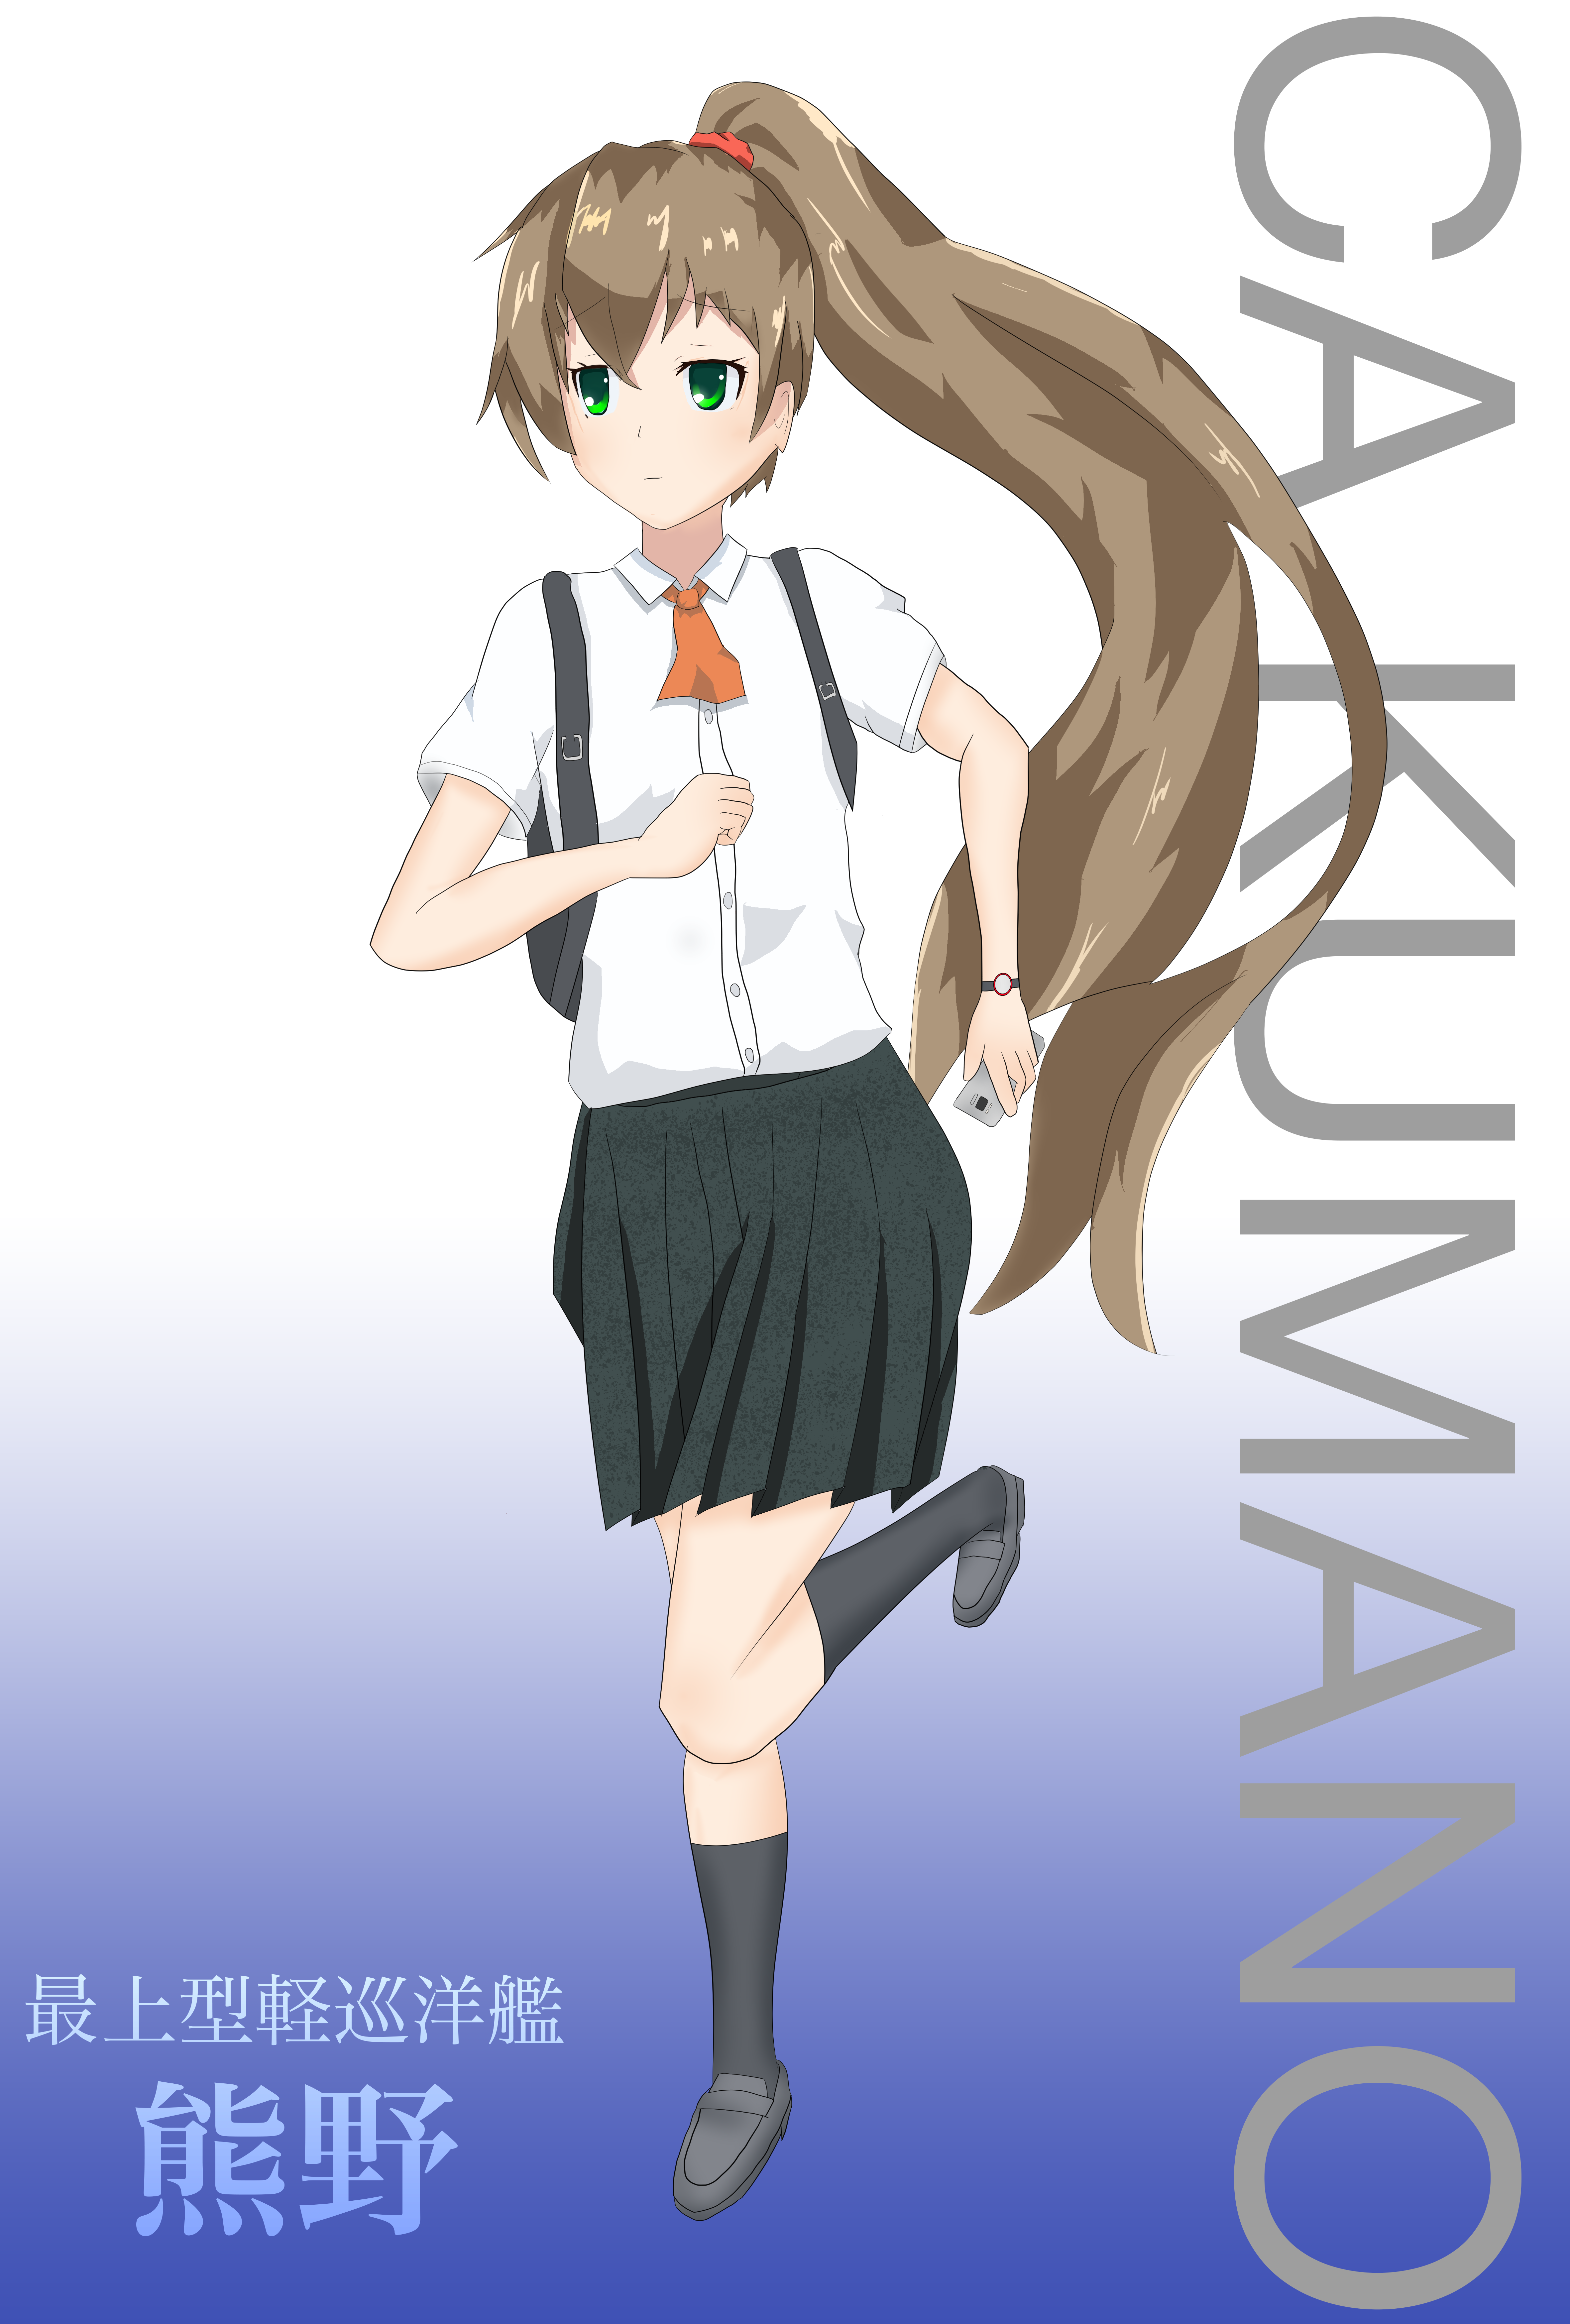 Anime 4724x6992 anime anime girls Kantai Collection Kumano (KanColle) ponytail brunette artwork digital art fan art